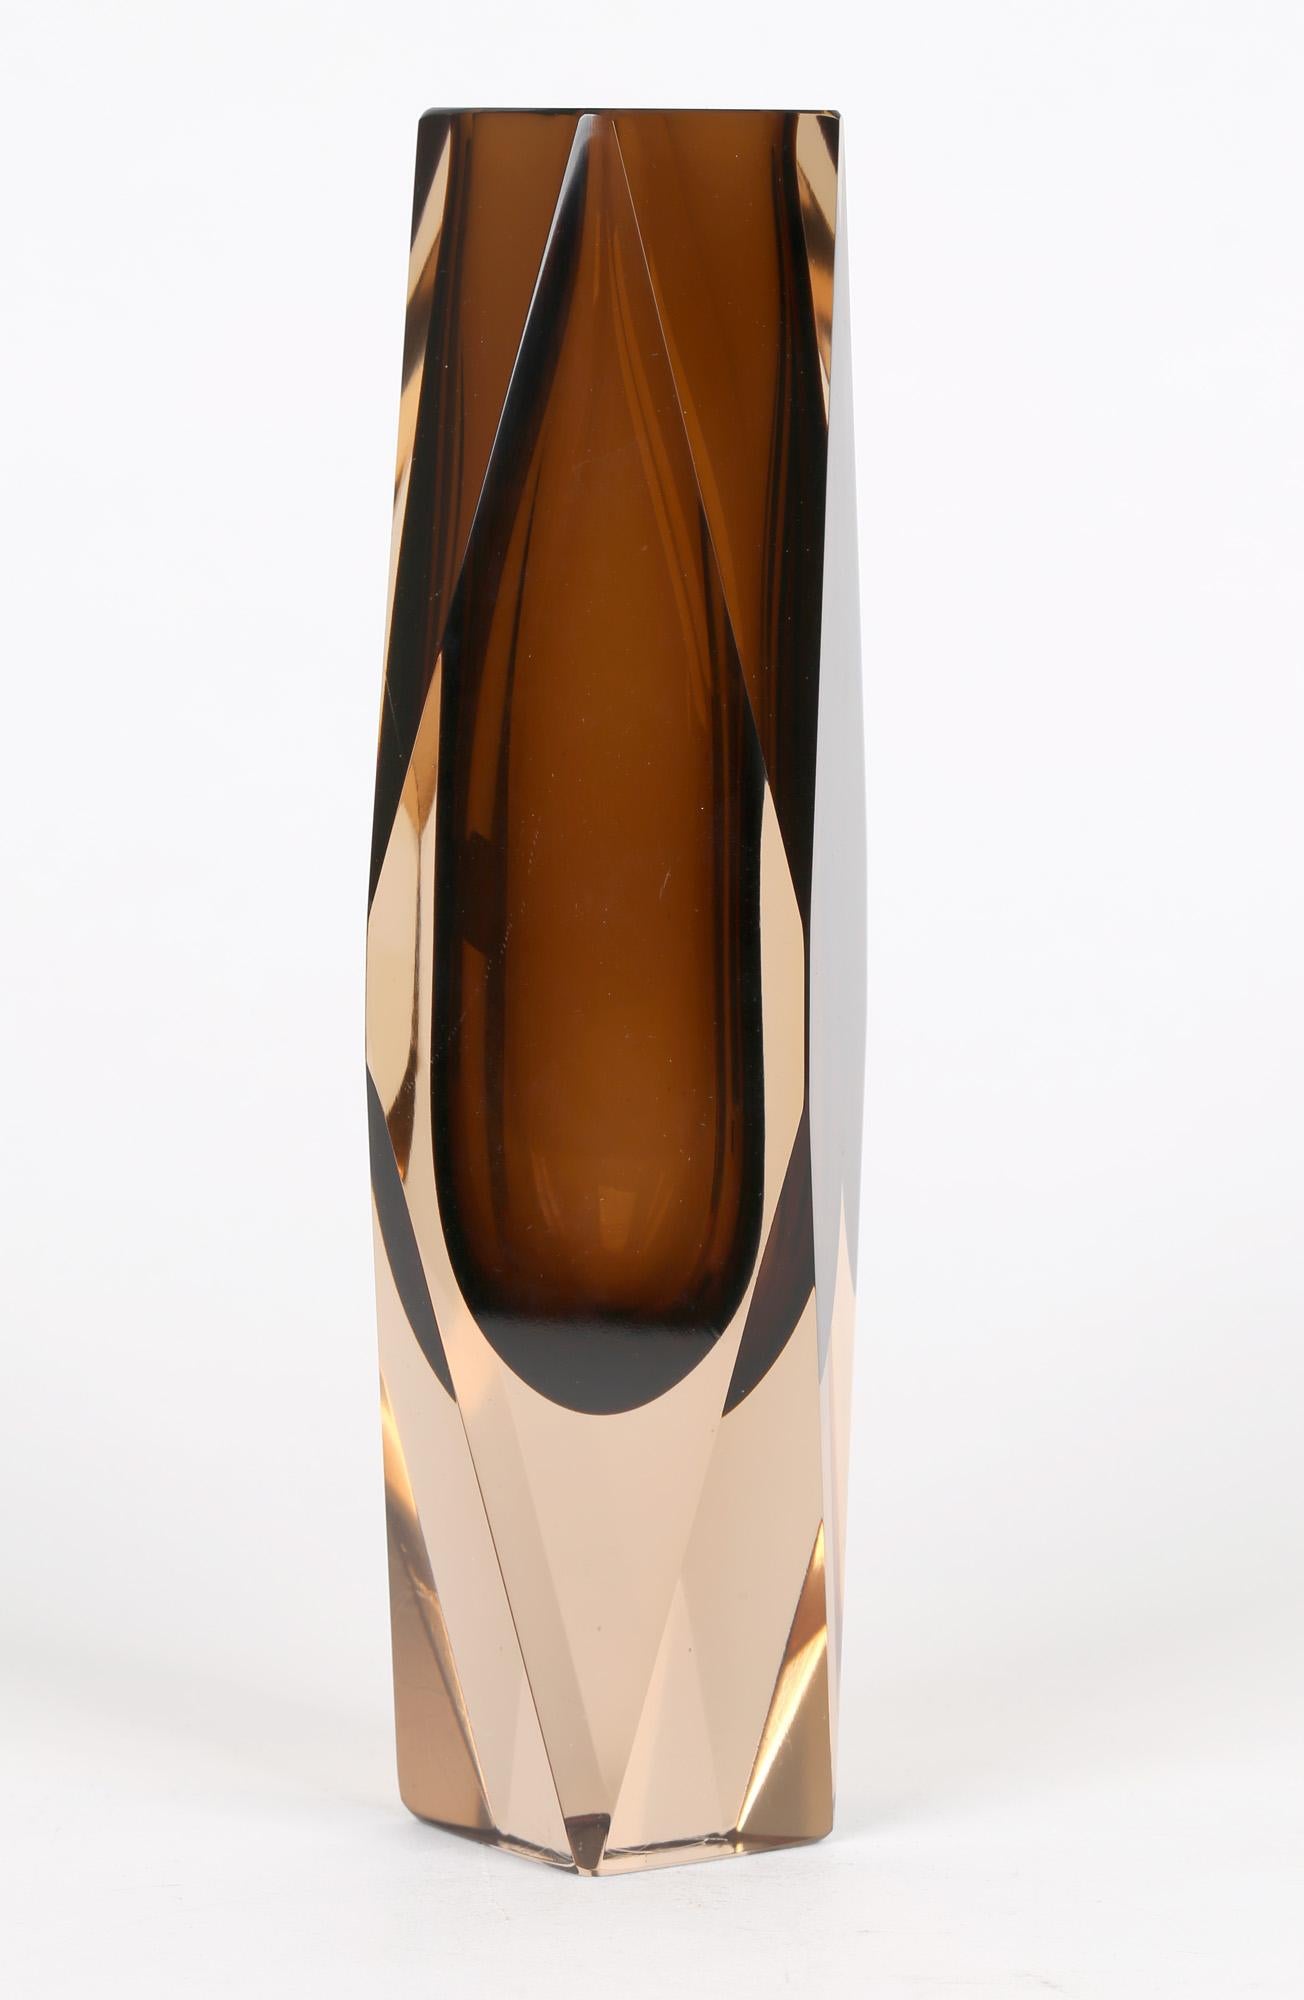 V Nason & C Murano Cinnamon Sommerso Faceted Art Glass Vase 8